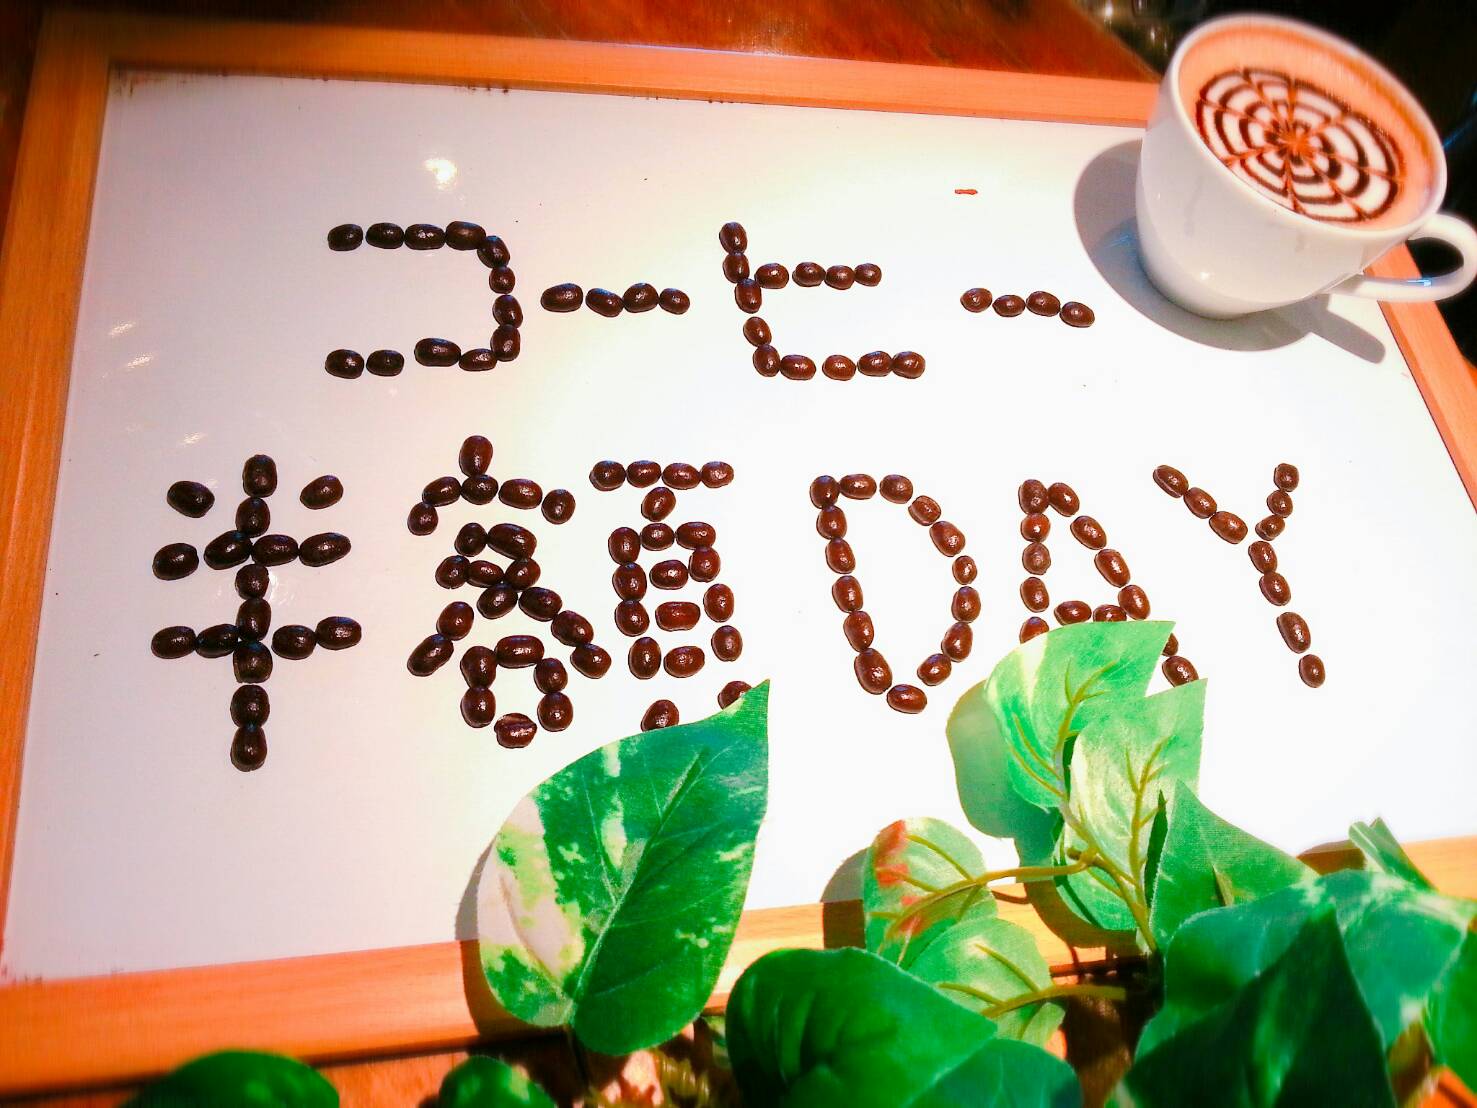 大山珈琲の日はコーヒーメニュー半額！もちろんモーニングやランチのドリンクメニューにも！